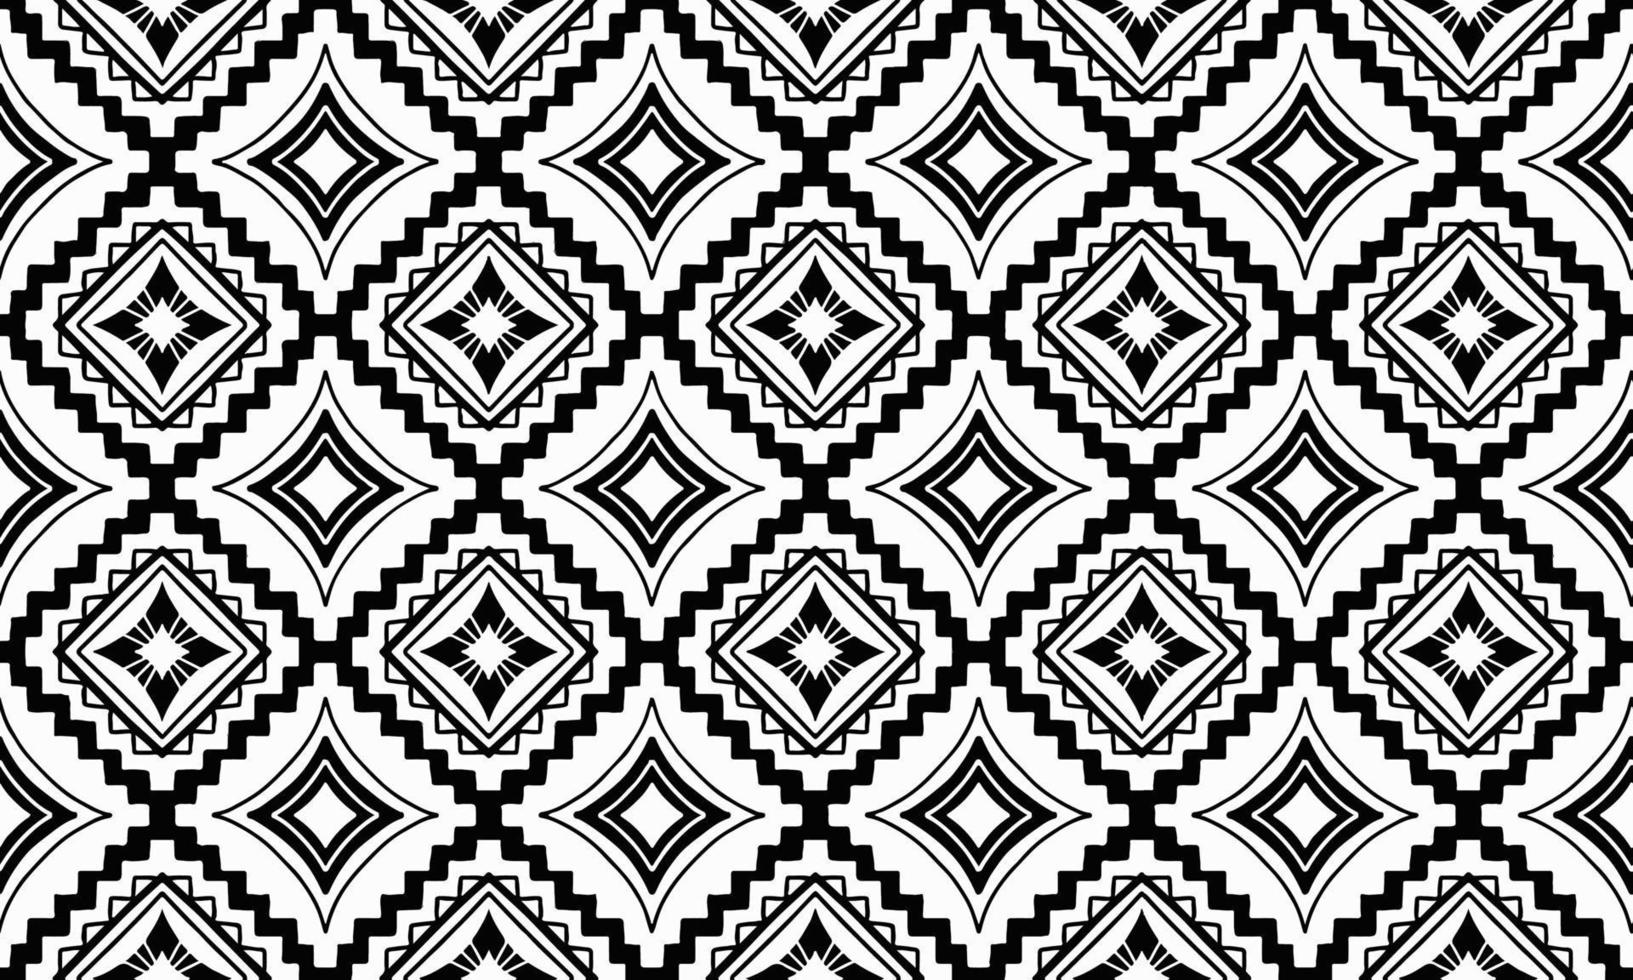 fundo étnico abstrato fofo preto branco geométrico tribal ikat motivo popular árabe oriental padrão nativo design tradicional papel de parede do tapete roupas tecido de embrulho impressão vetor de malha batik folk